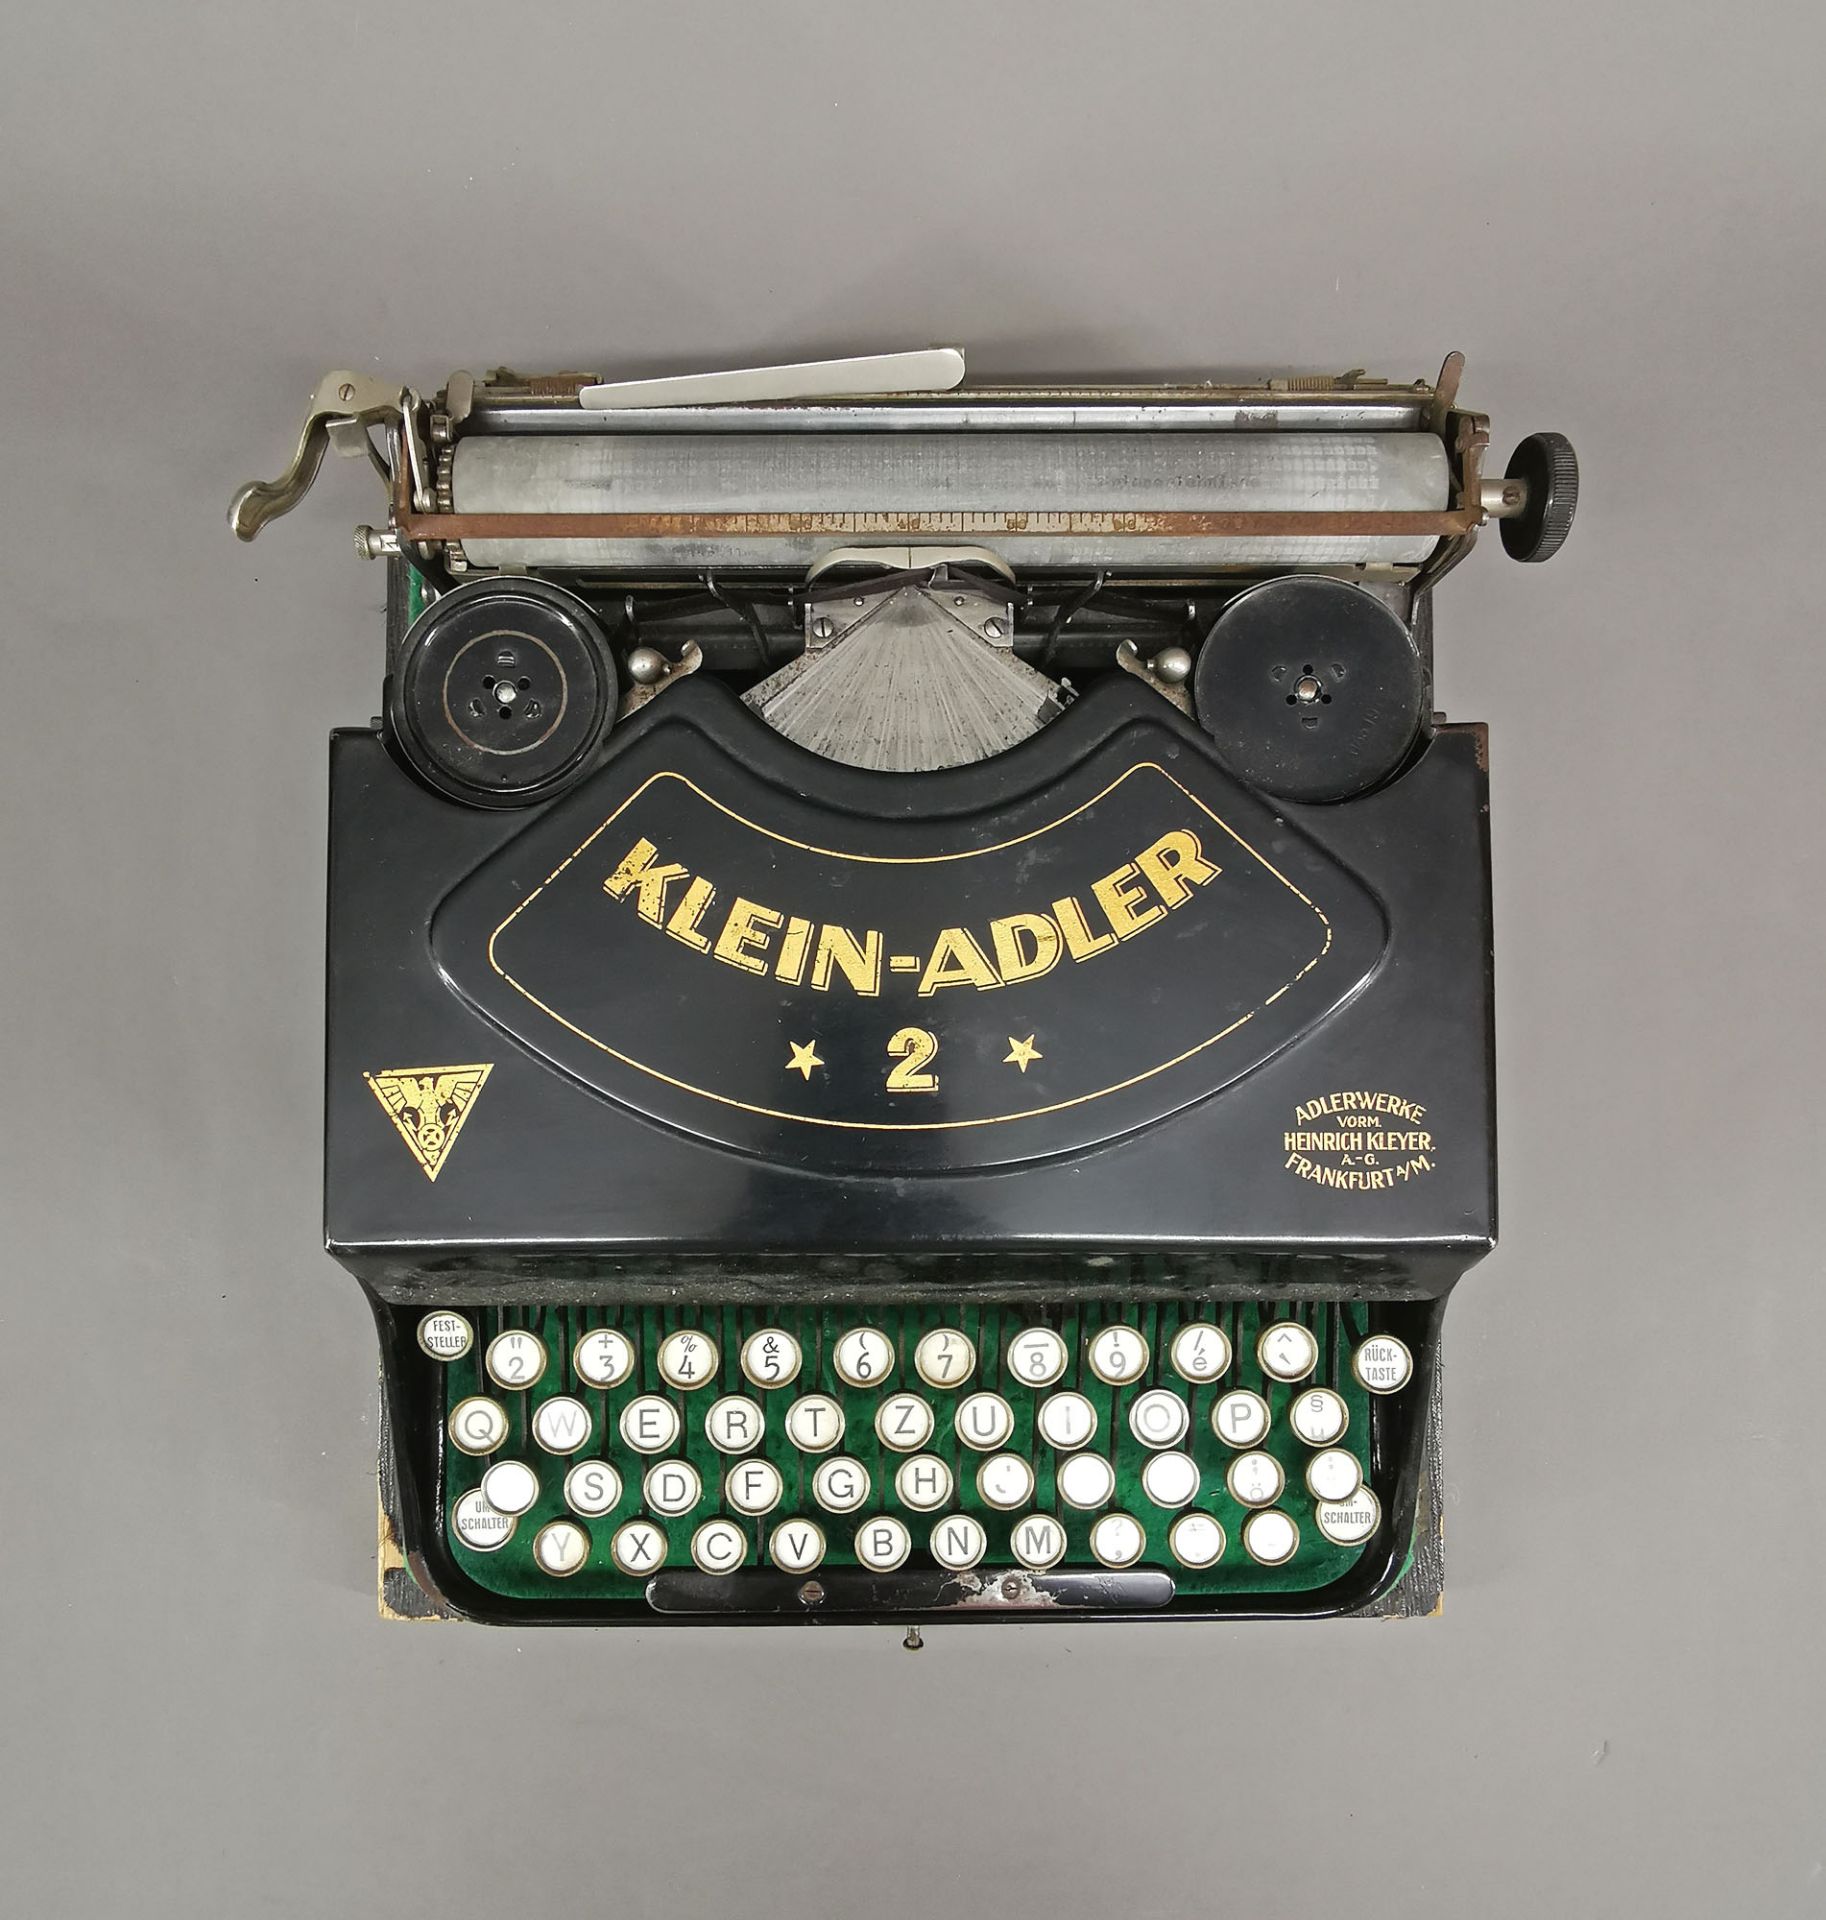 Reise-Schreibmaschine Klein-Adler 2 - Image 4 of 6